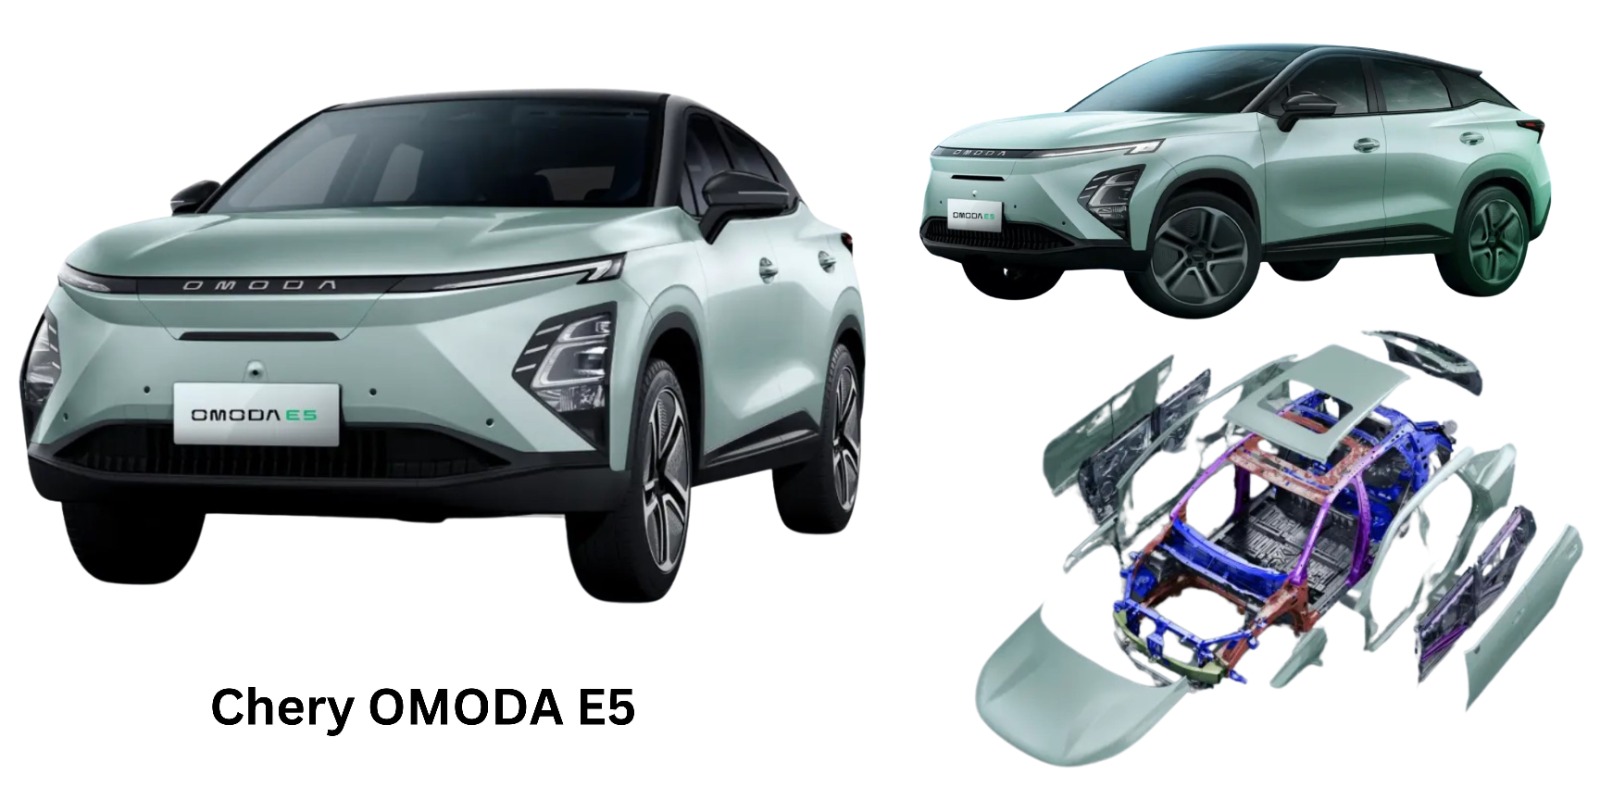 Review Chery OMODA E5, Sebuah SUV Kencang dengan Teknologi ADAS! Harga Terjangkau